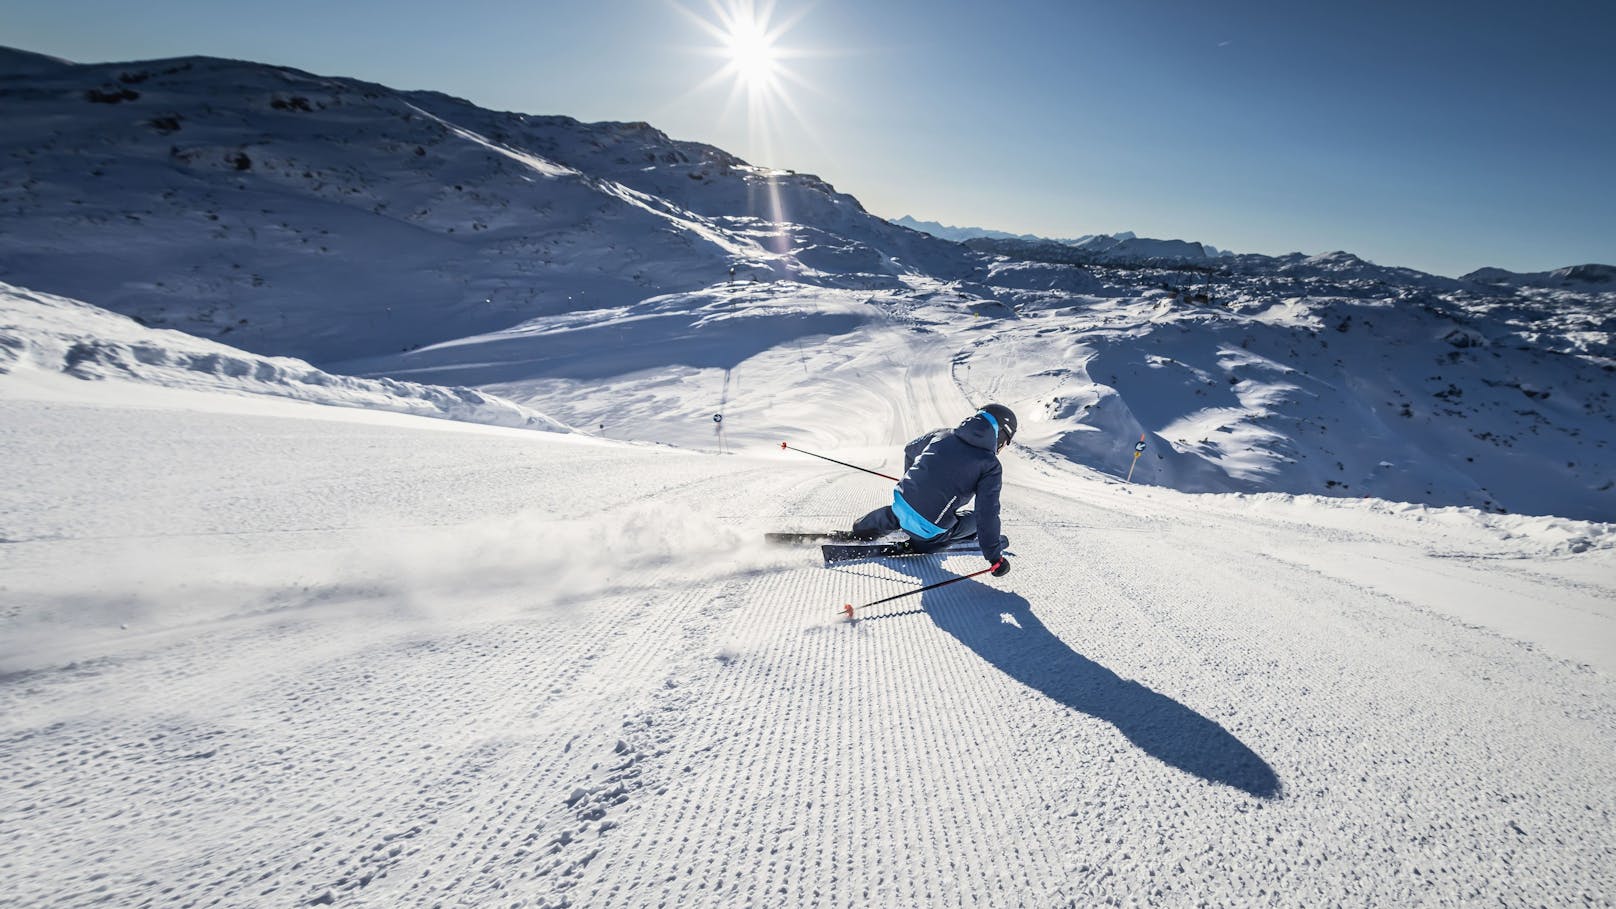 Helm zerbrach – Urlauberkind (9) hat schweren Skiunfall